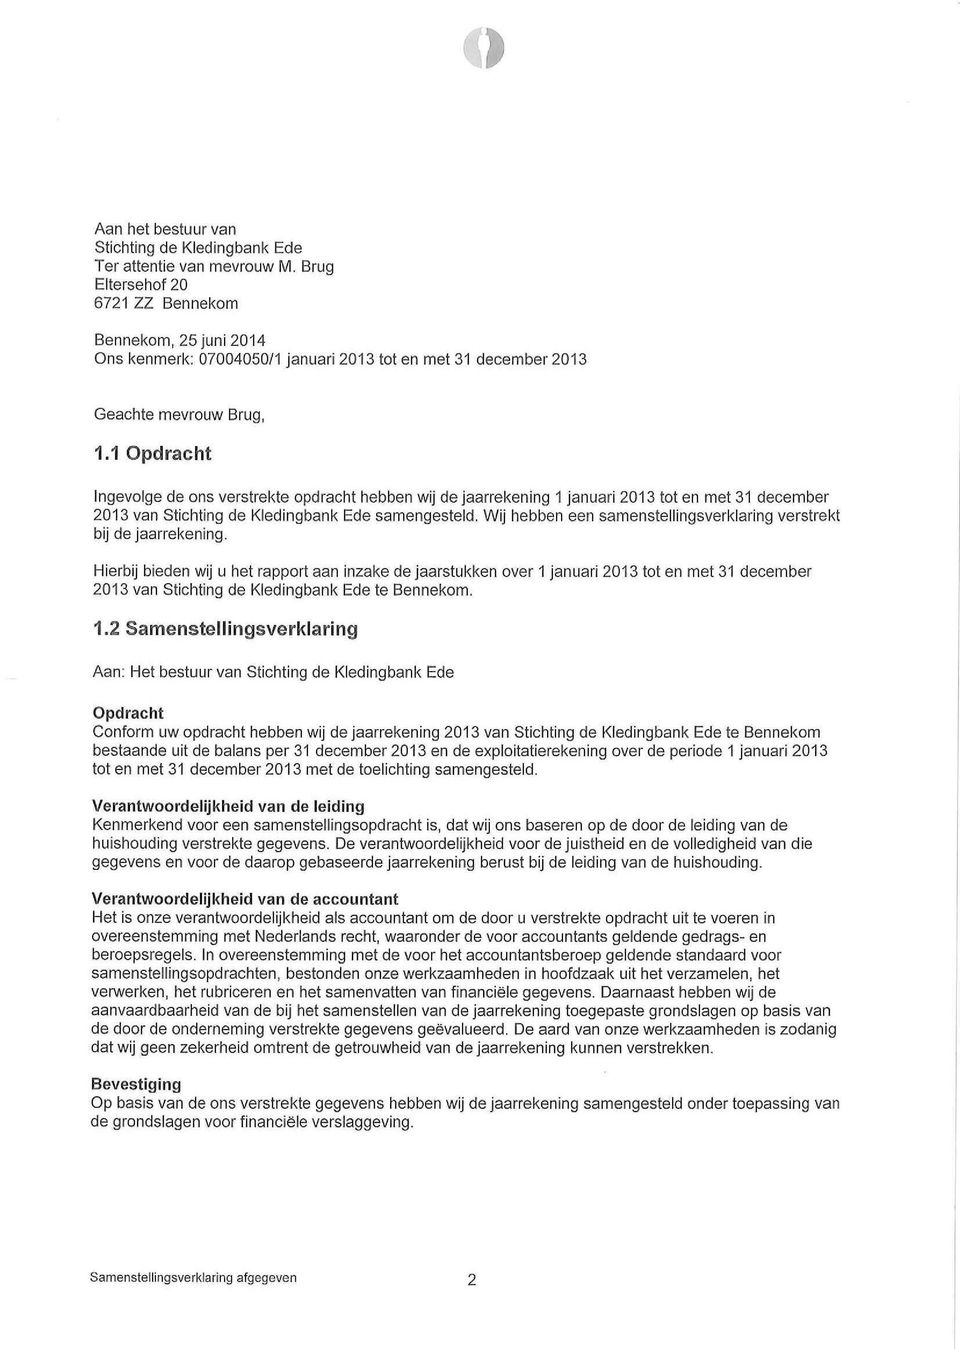 1 pdracht Ingevolge de ons verstrekte opdracht hebben wij de jaarrekening 1 januari 2013 tot en met 31 december 2013 van Stichting de Kiedingbank Ede samengesteld.